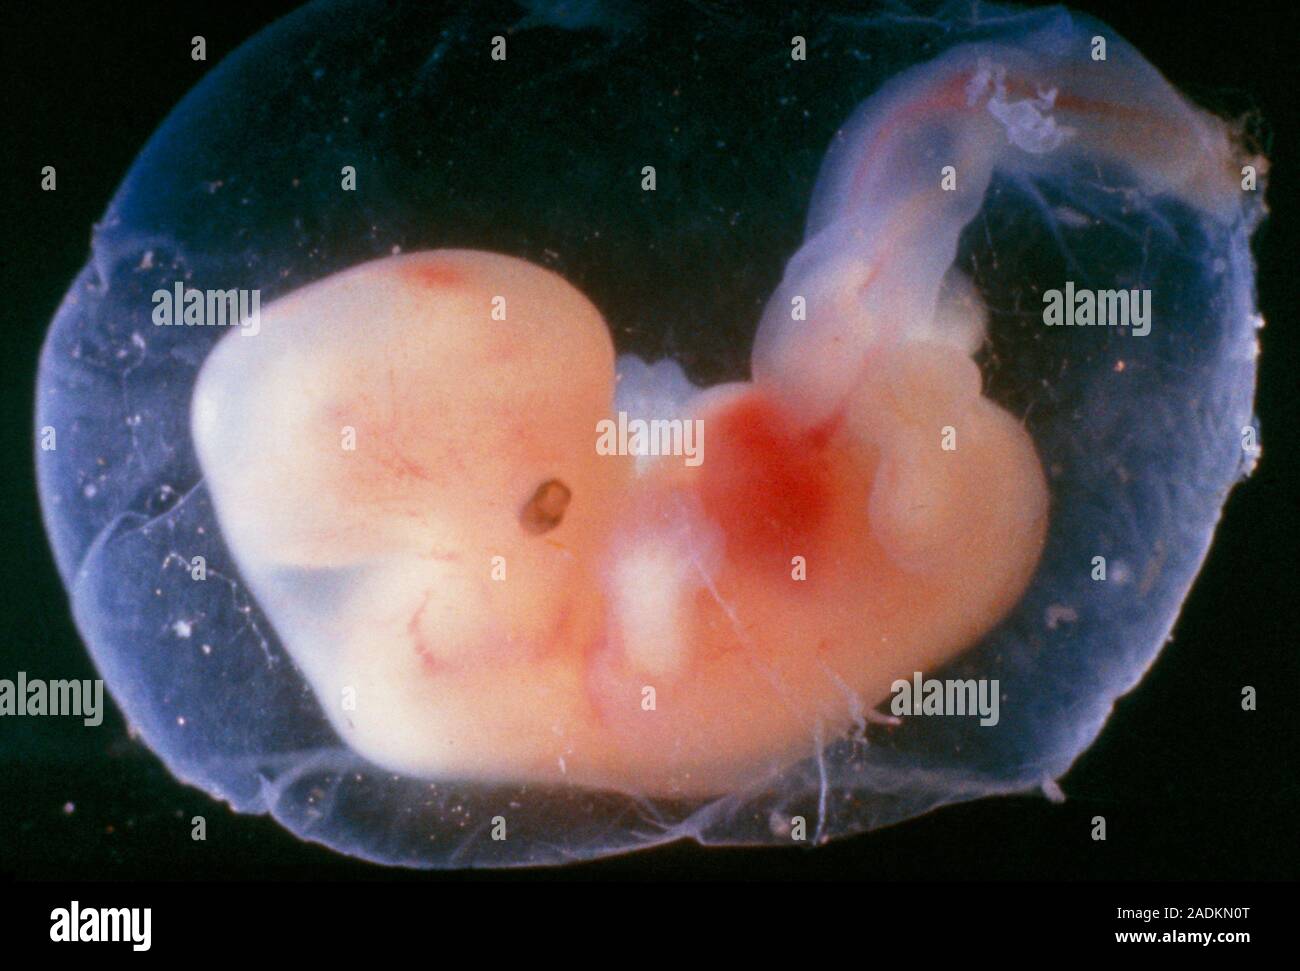 Через 6 8 недель. Зародыг человека на 5 недели беременности. Эмбрион человека 5 недель.